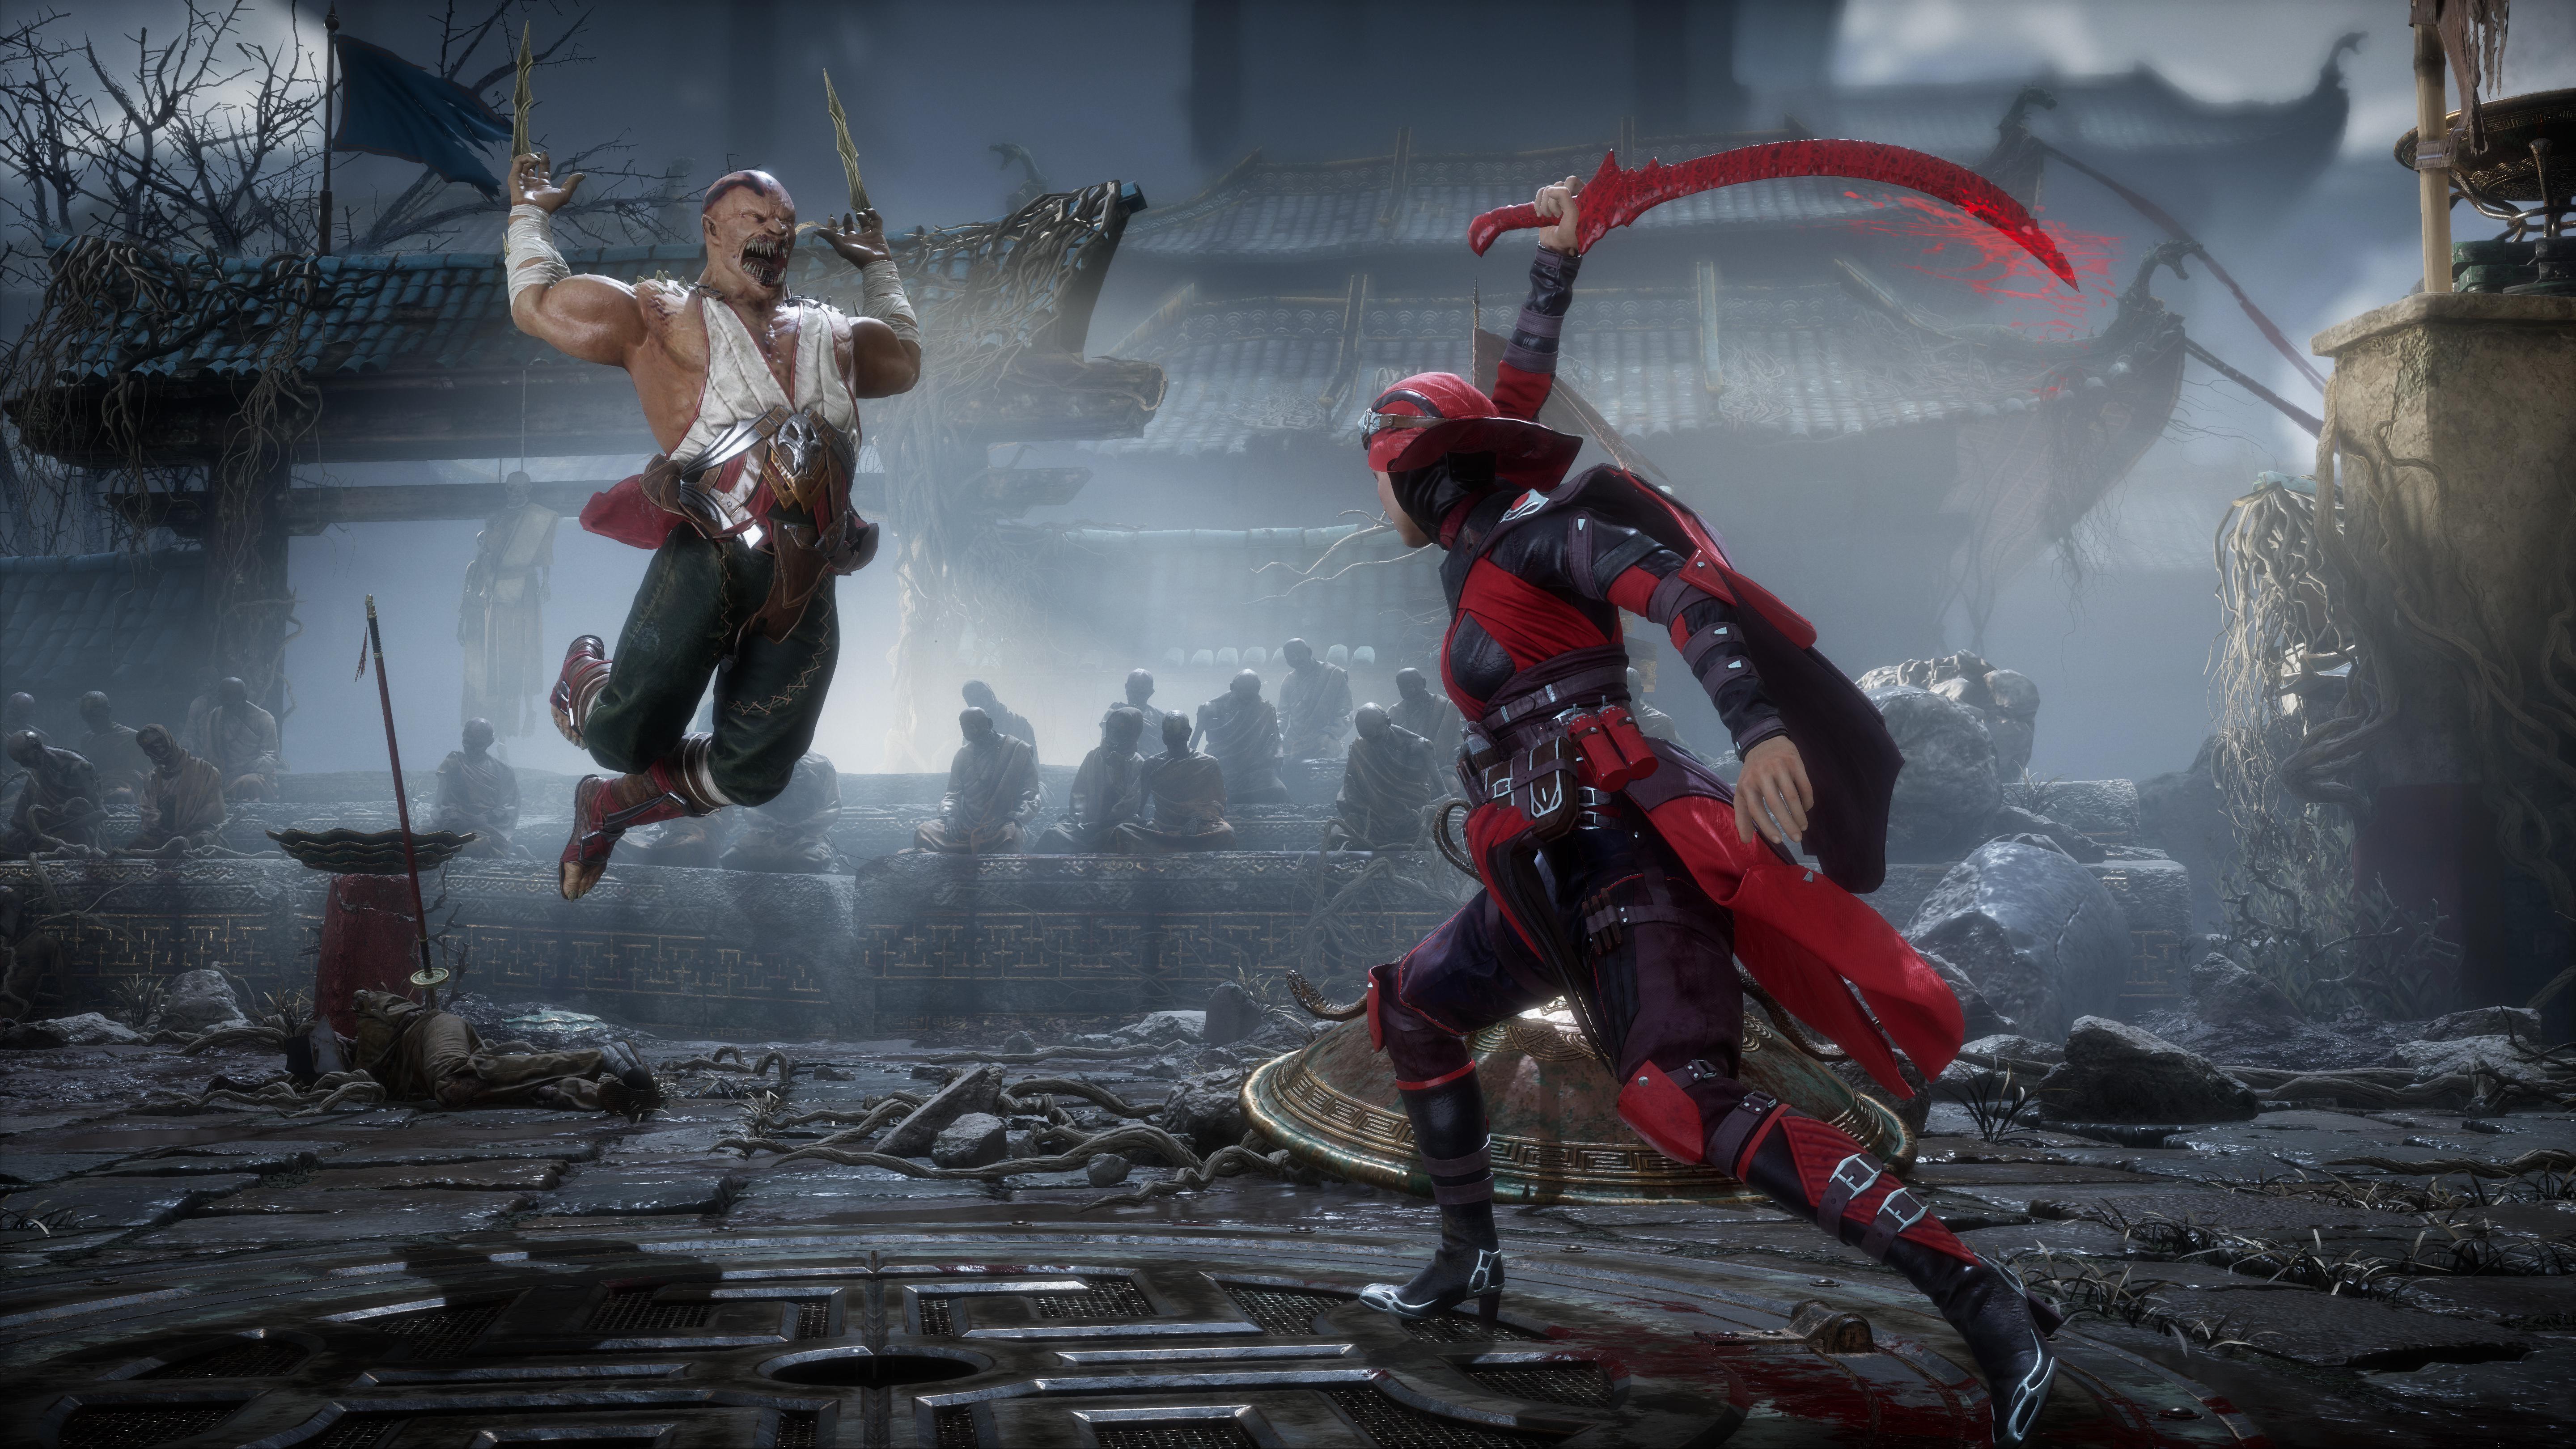 Mk11 Screenshots Spotlight Skarlet Baraka And More Mortal Kombat Online